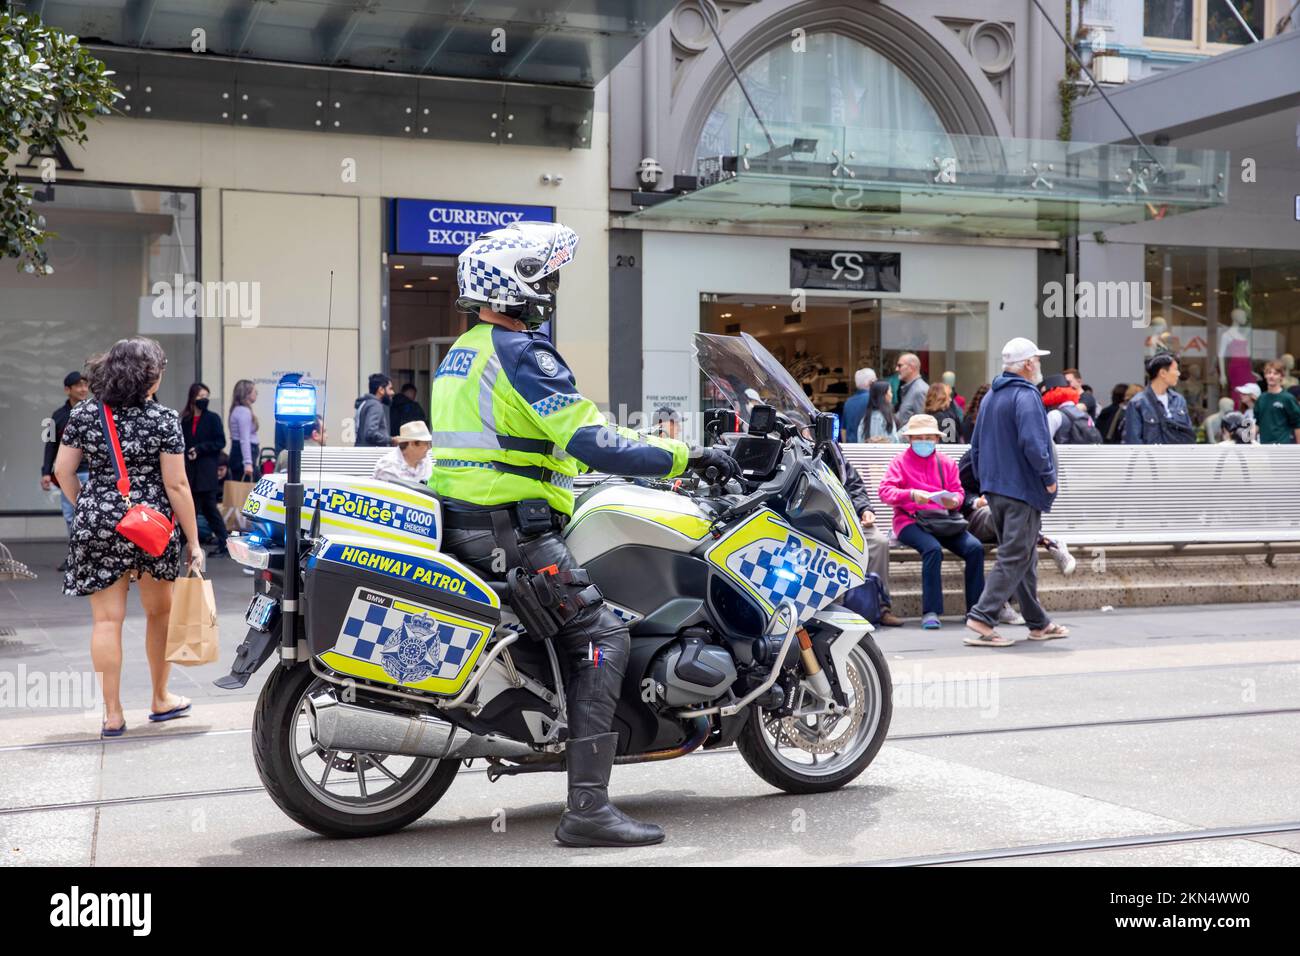 Australischer Polizist auf BMW Highway Patrol Motorrad beobachtet Straßenproteste im Zentrum von Melbourne, Victoria, Australien Stockfoto